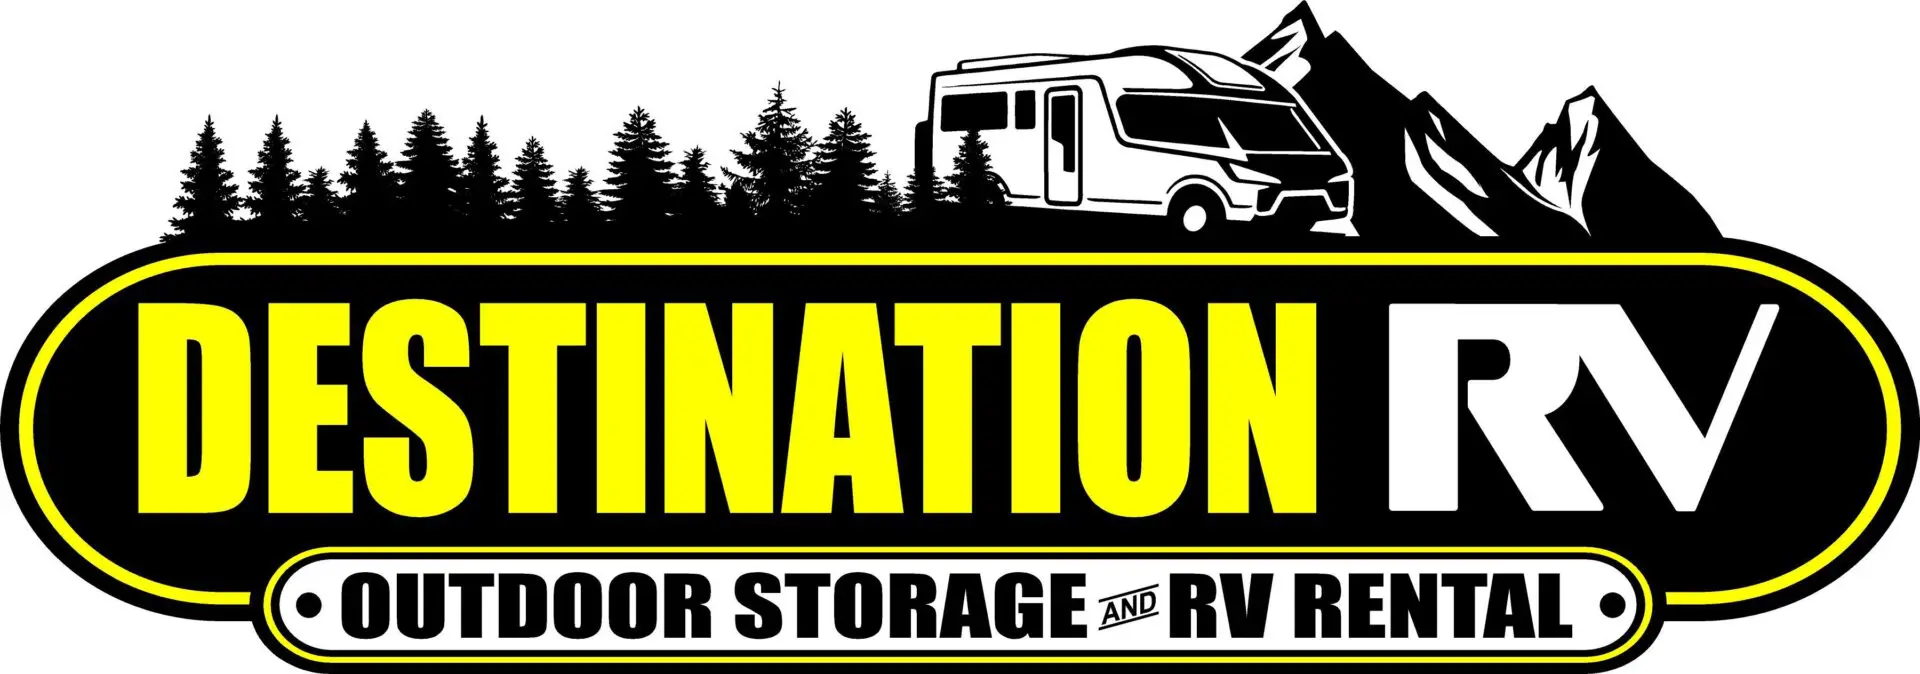 Destination RV revised logo.jpg_1681920617